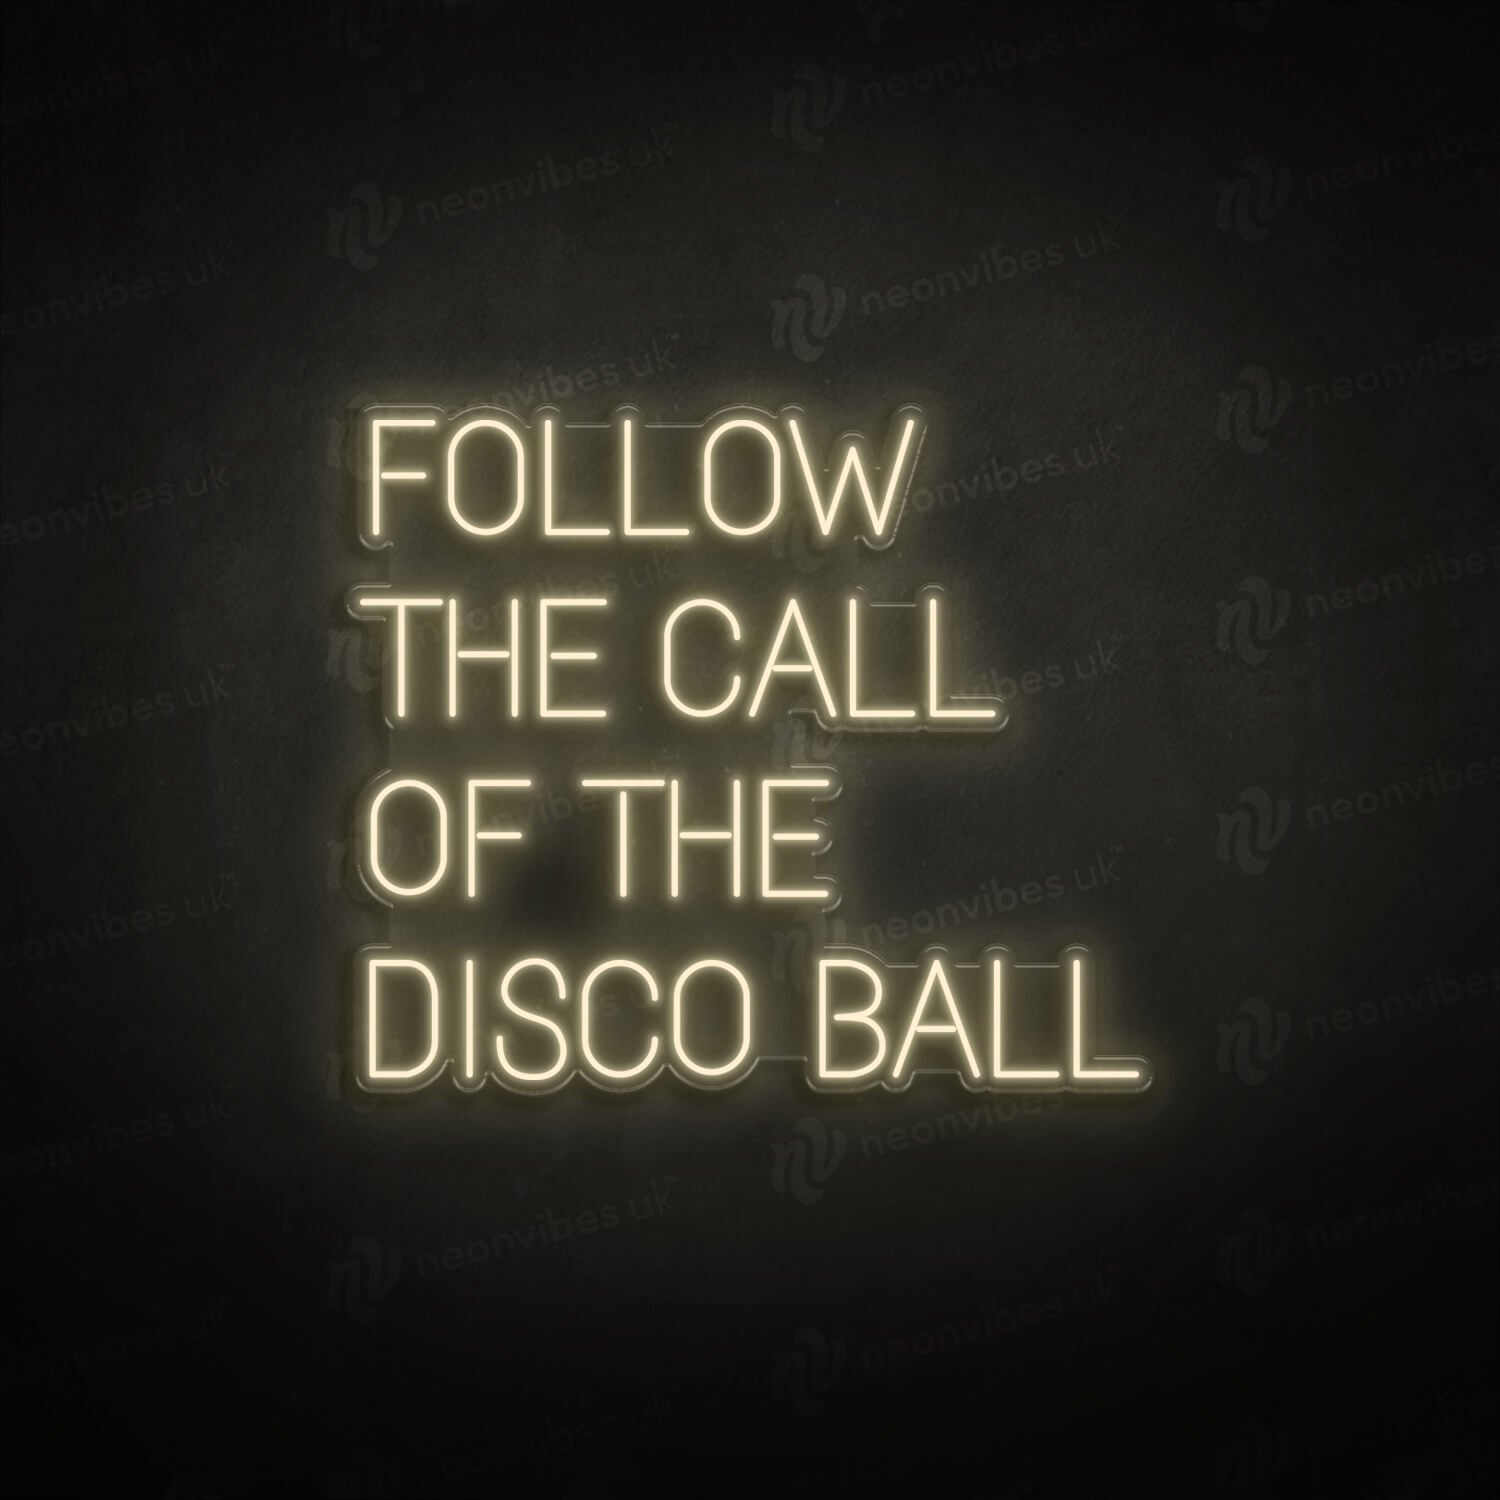 Follow the call to the disco ball neon sign